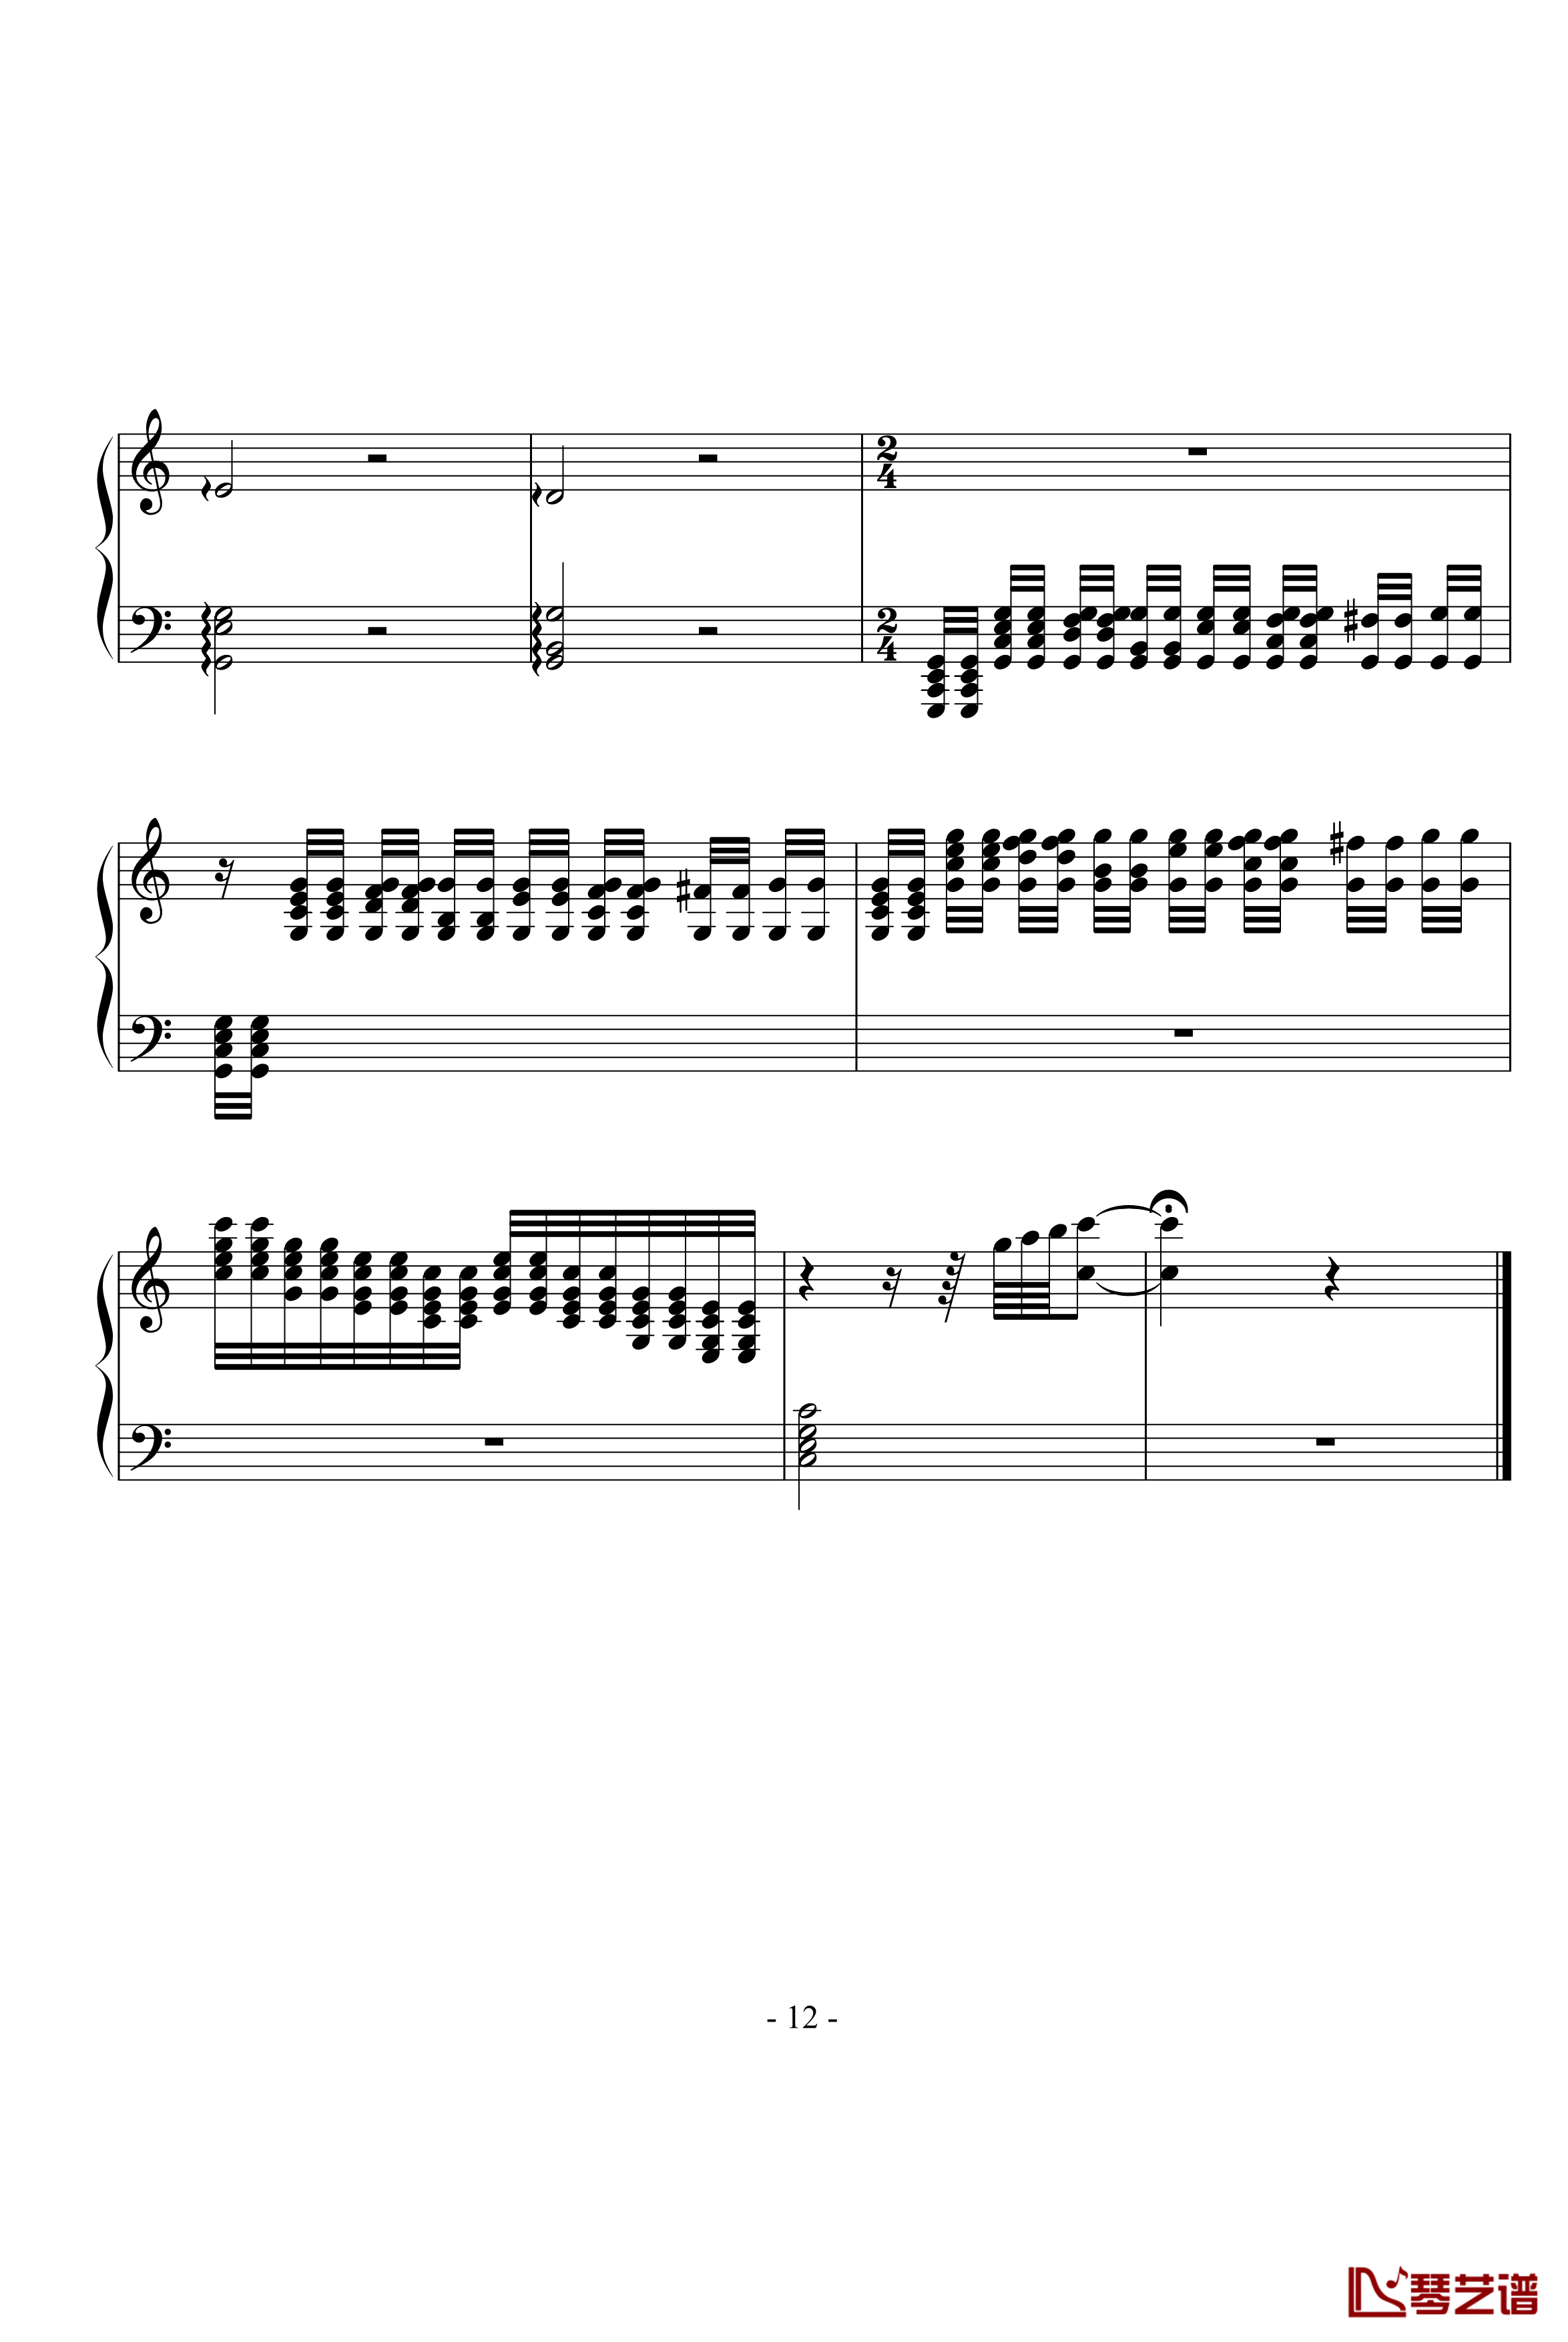 小星星主题变奏钢琴谱-左手练习曲-summer1988062312